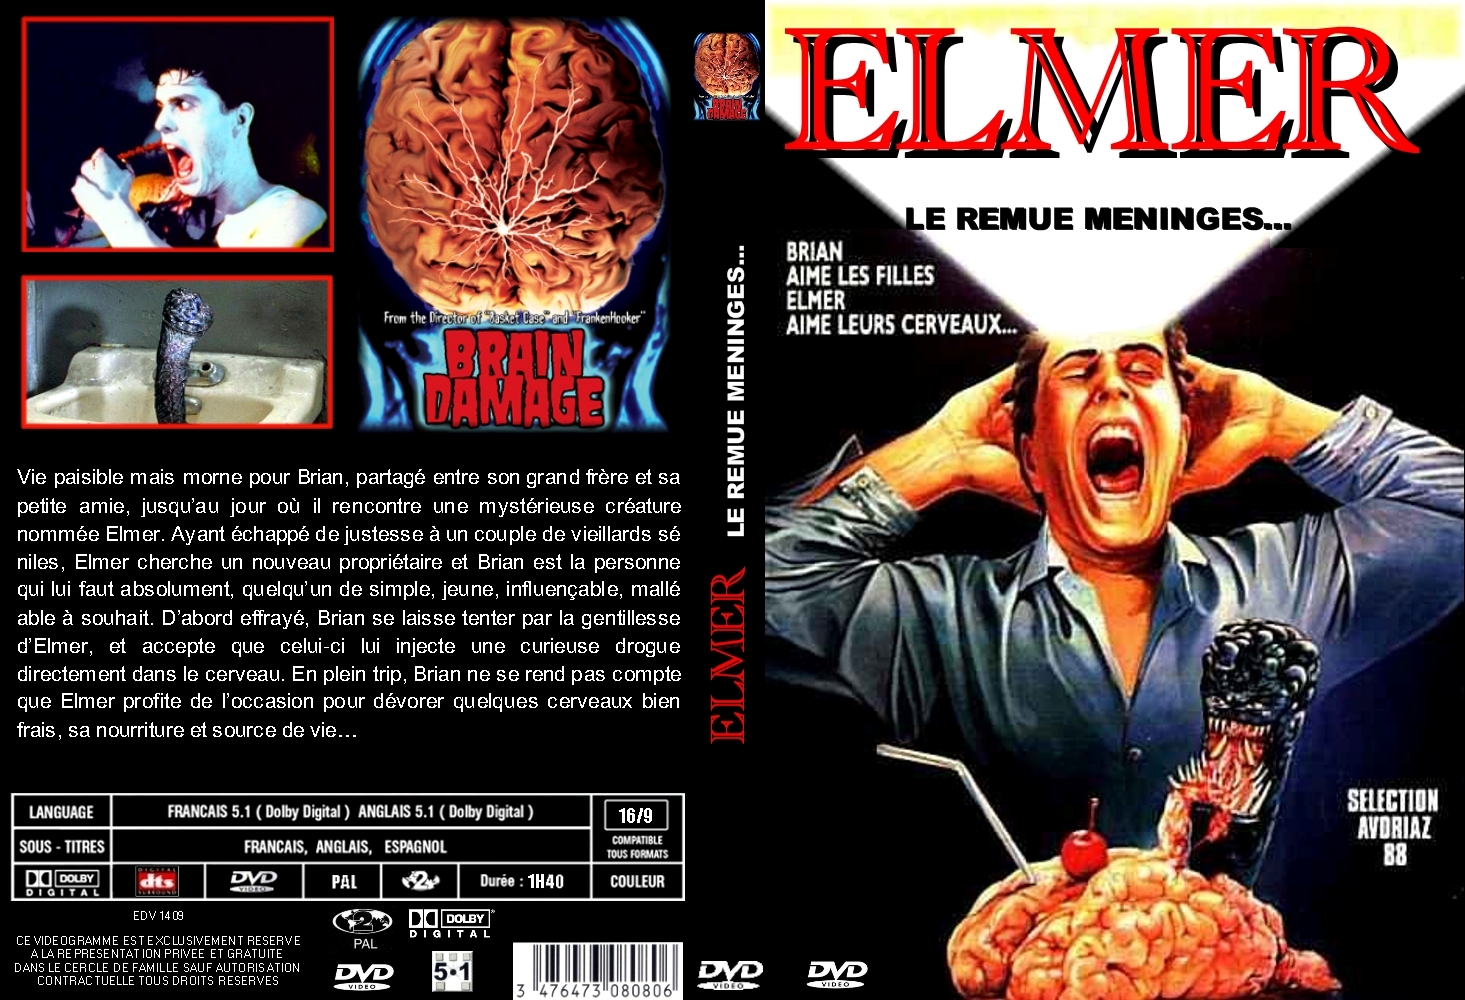 Jaquette DVD Elmer le remue mninges custom